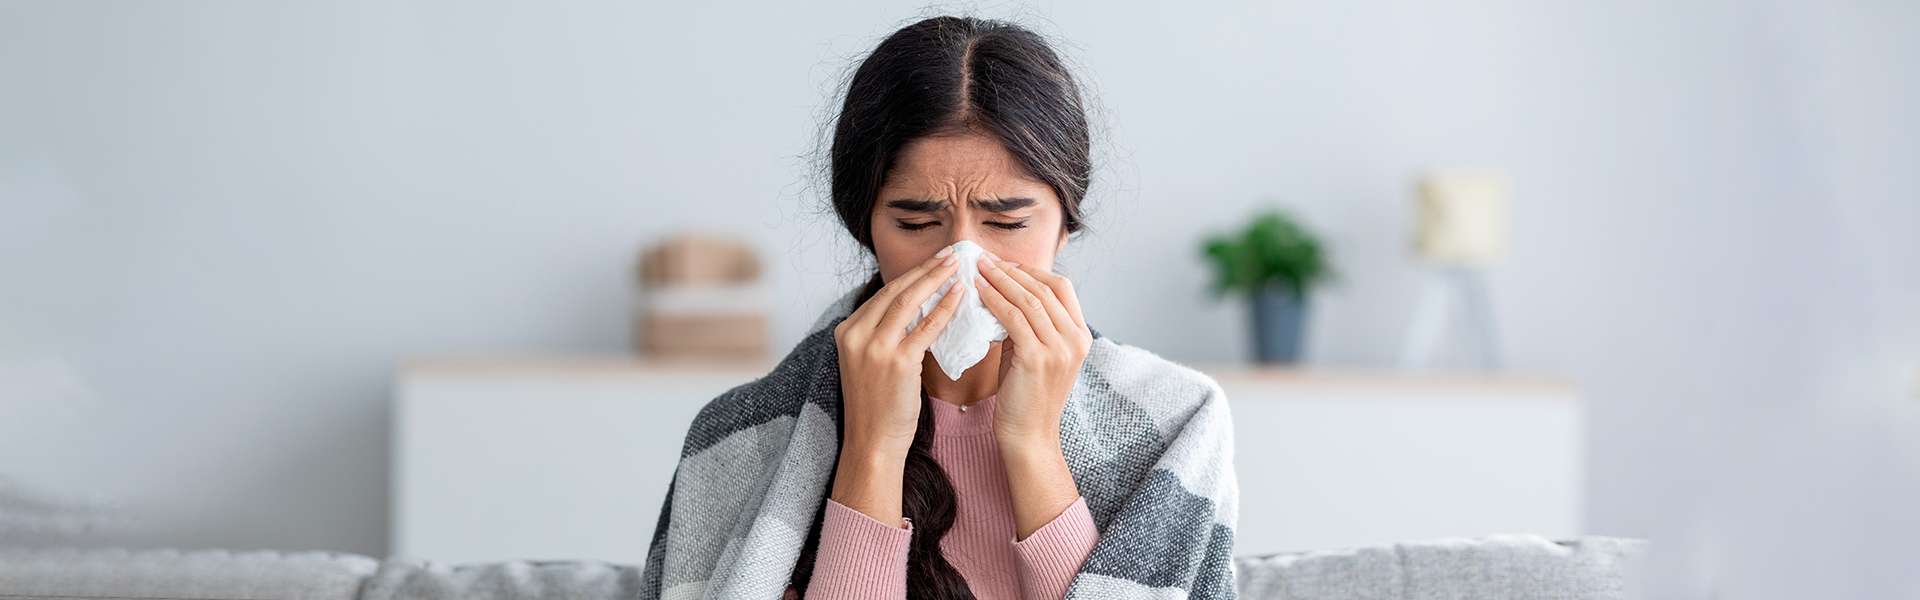 Tratamiento de un resfriado: síntomas, causas y remedios